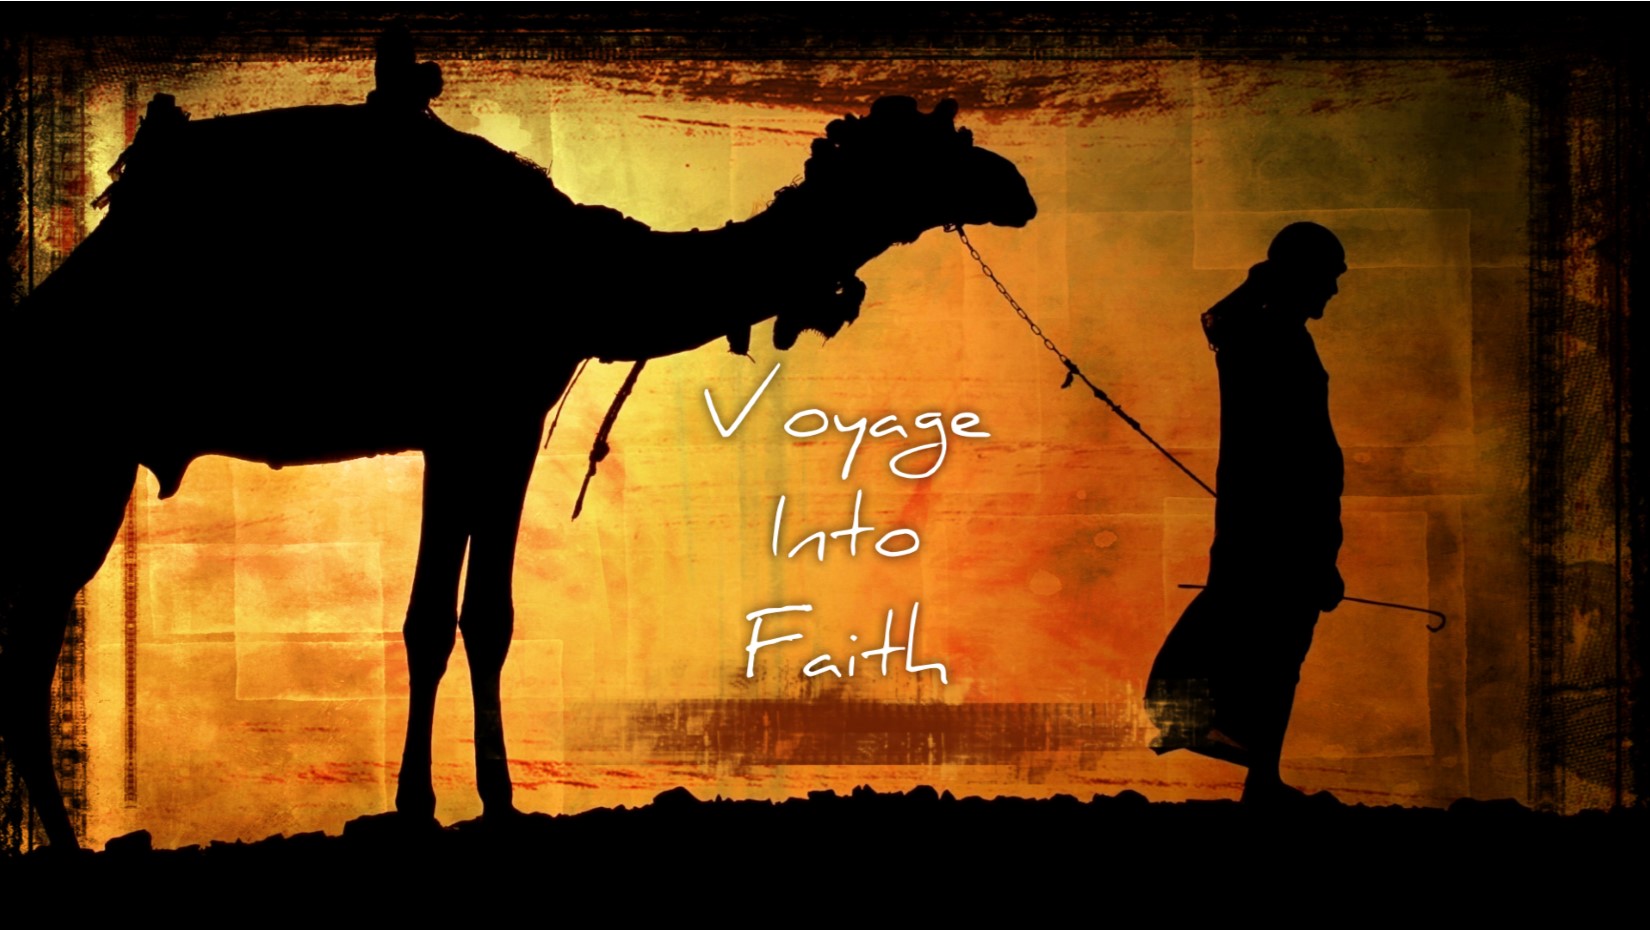 07.26.2020 Voyage Into Faith: Rahab